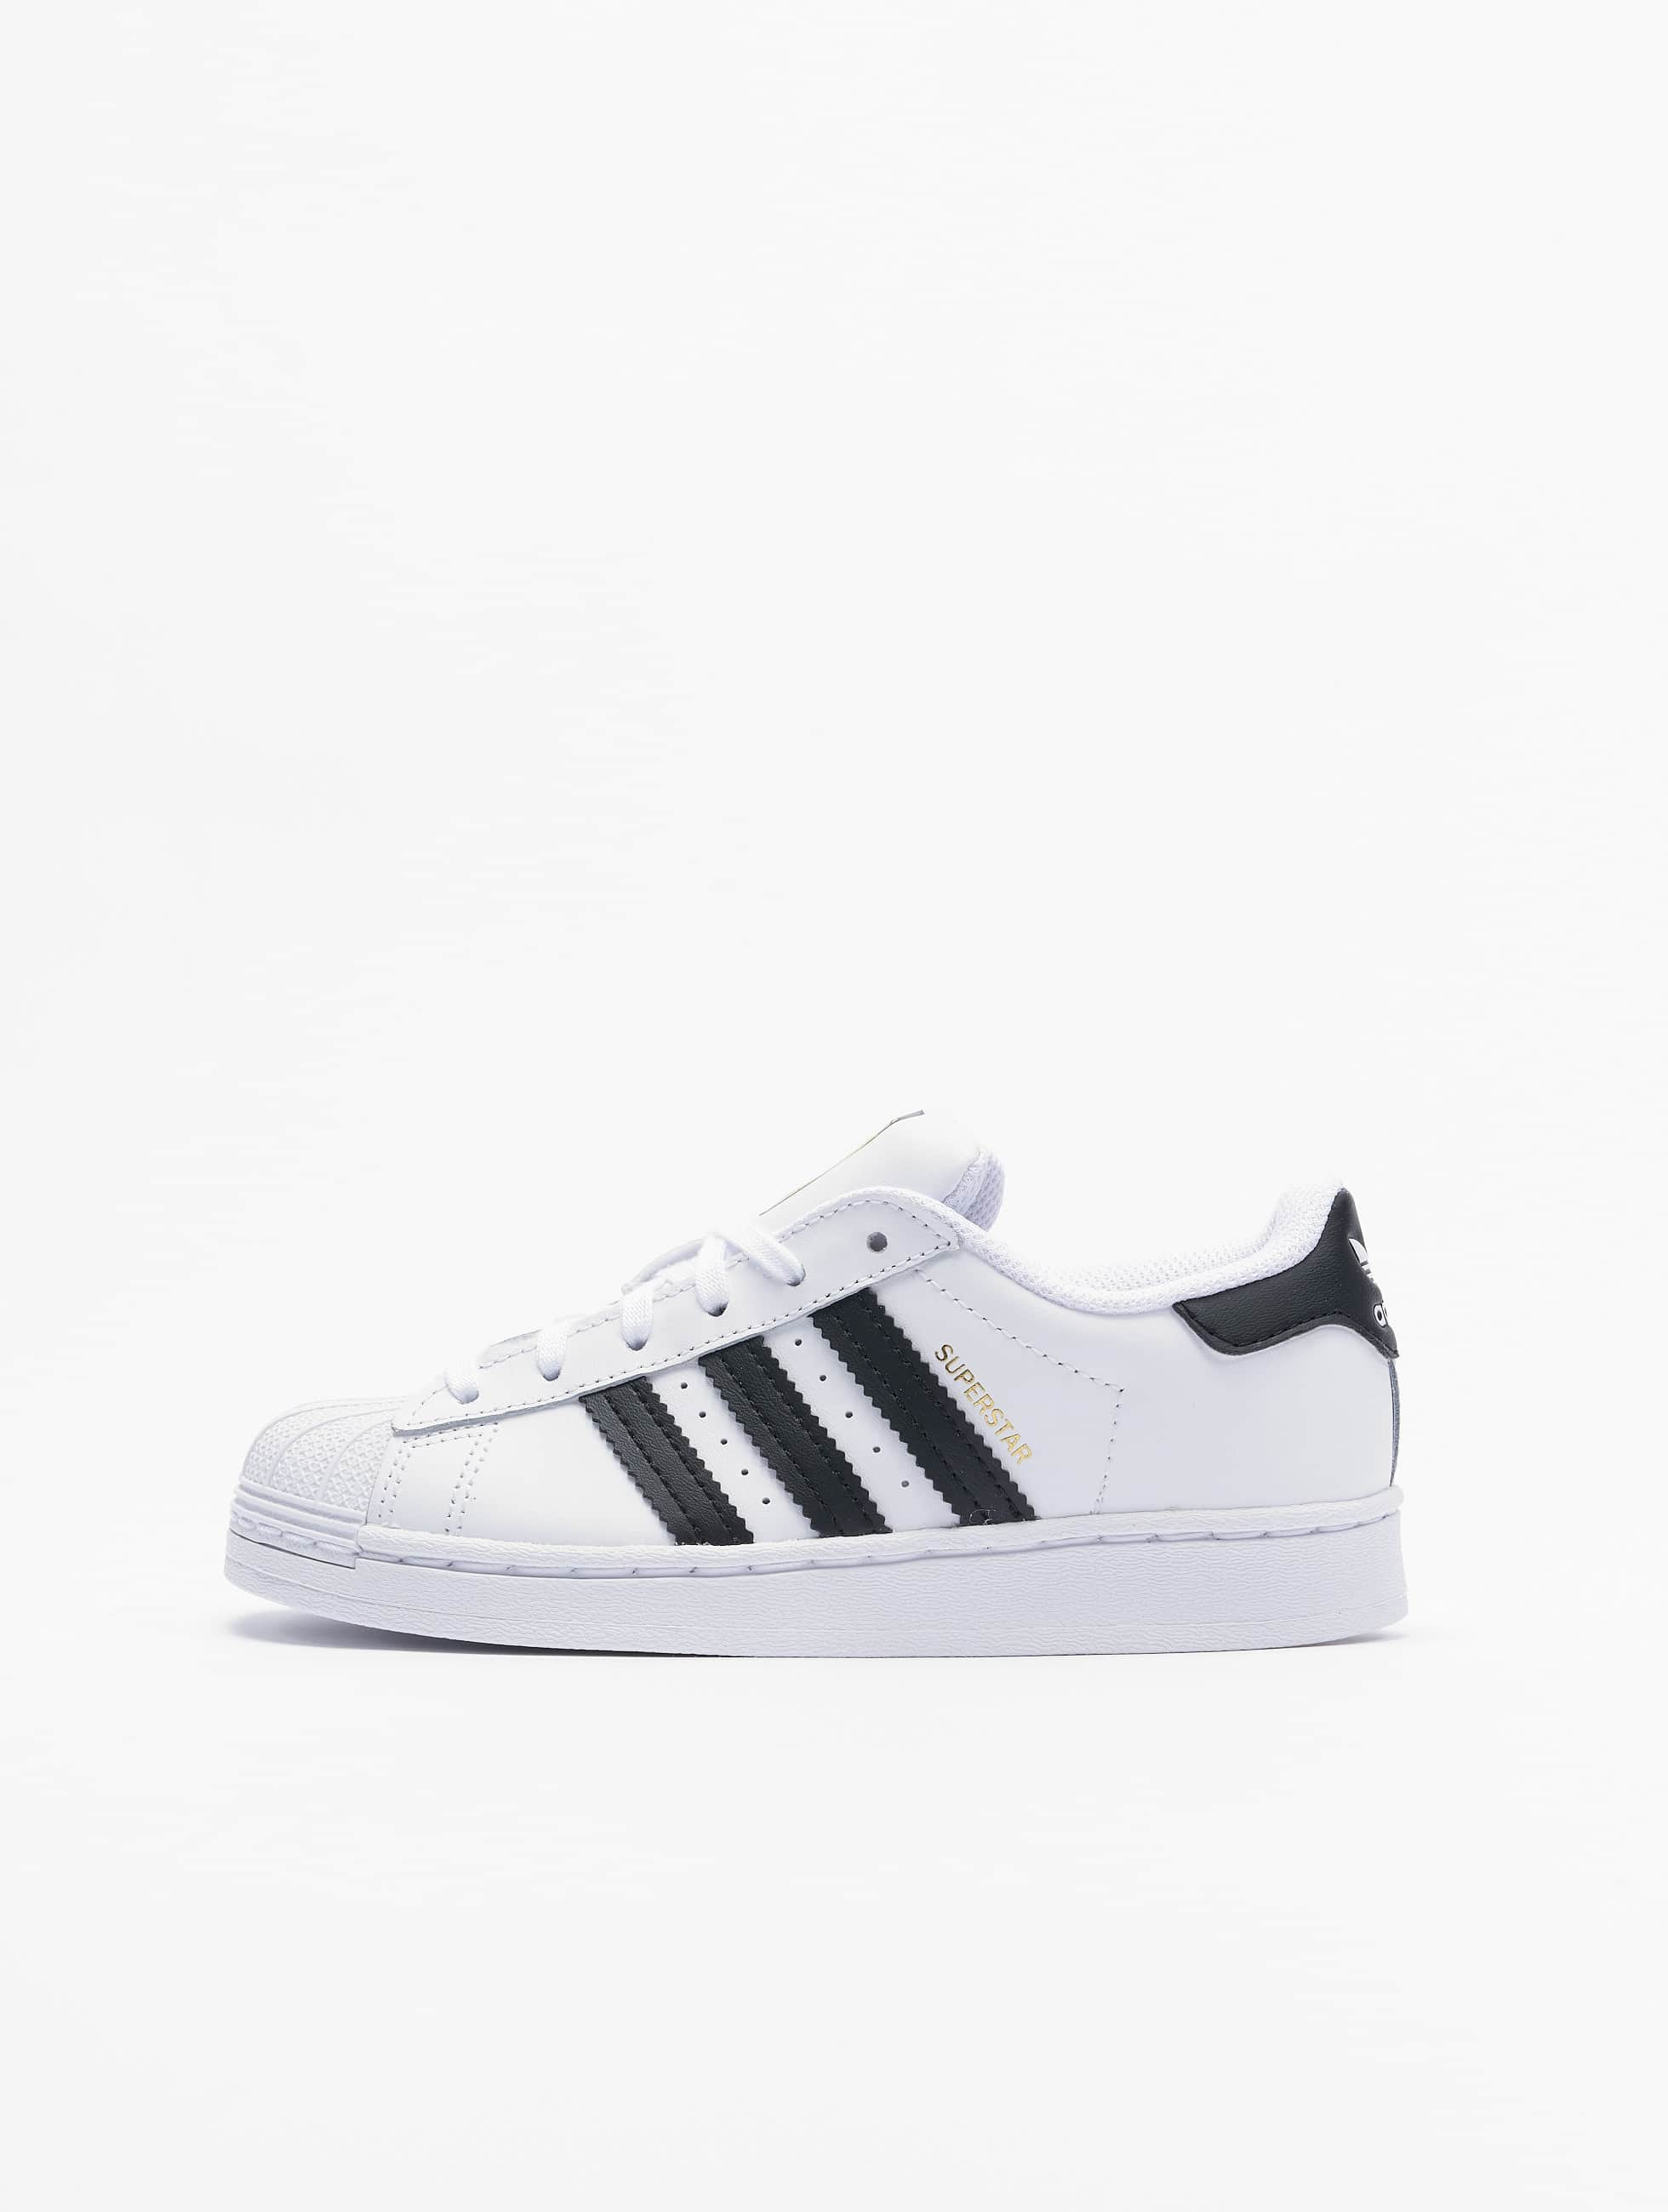 aanvaardbaar Praktisch Als reactie op de adidas Originals schoen / sneaker Superstar C in wit 837729